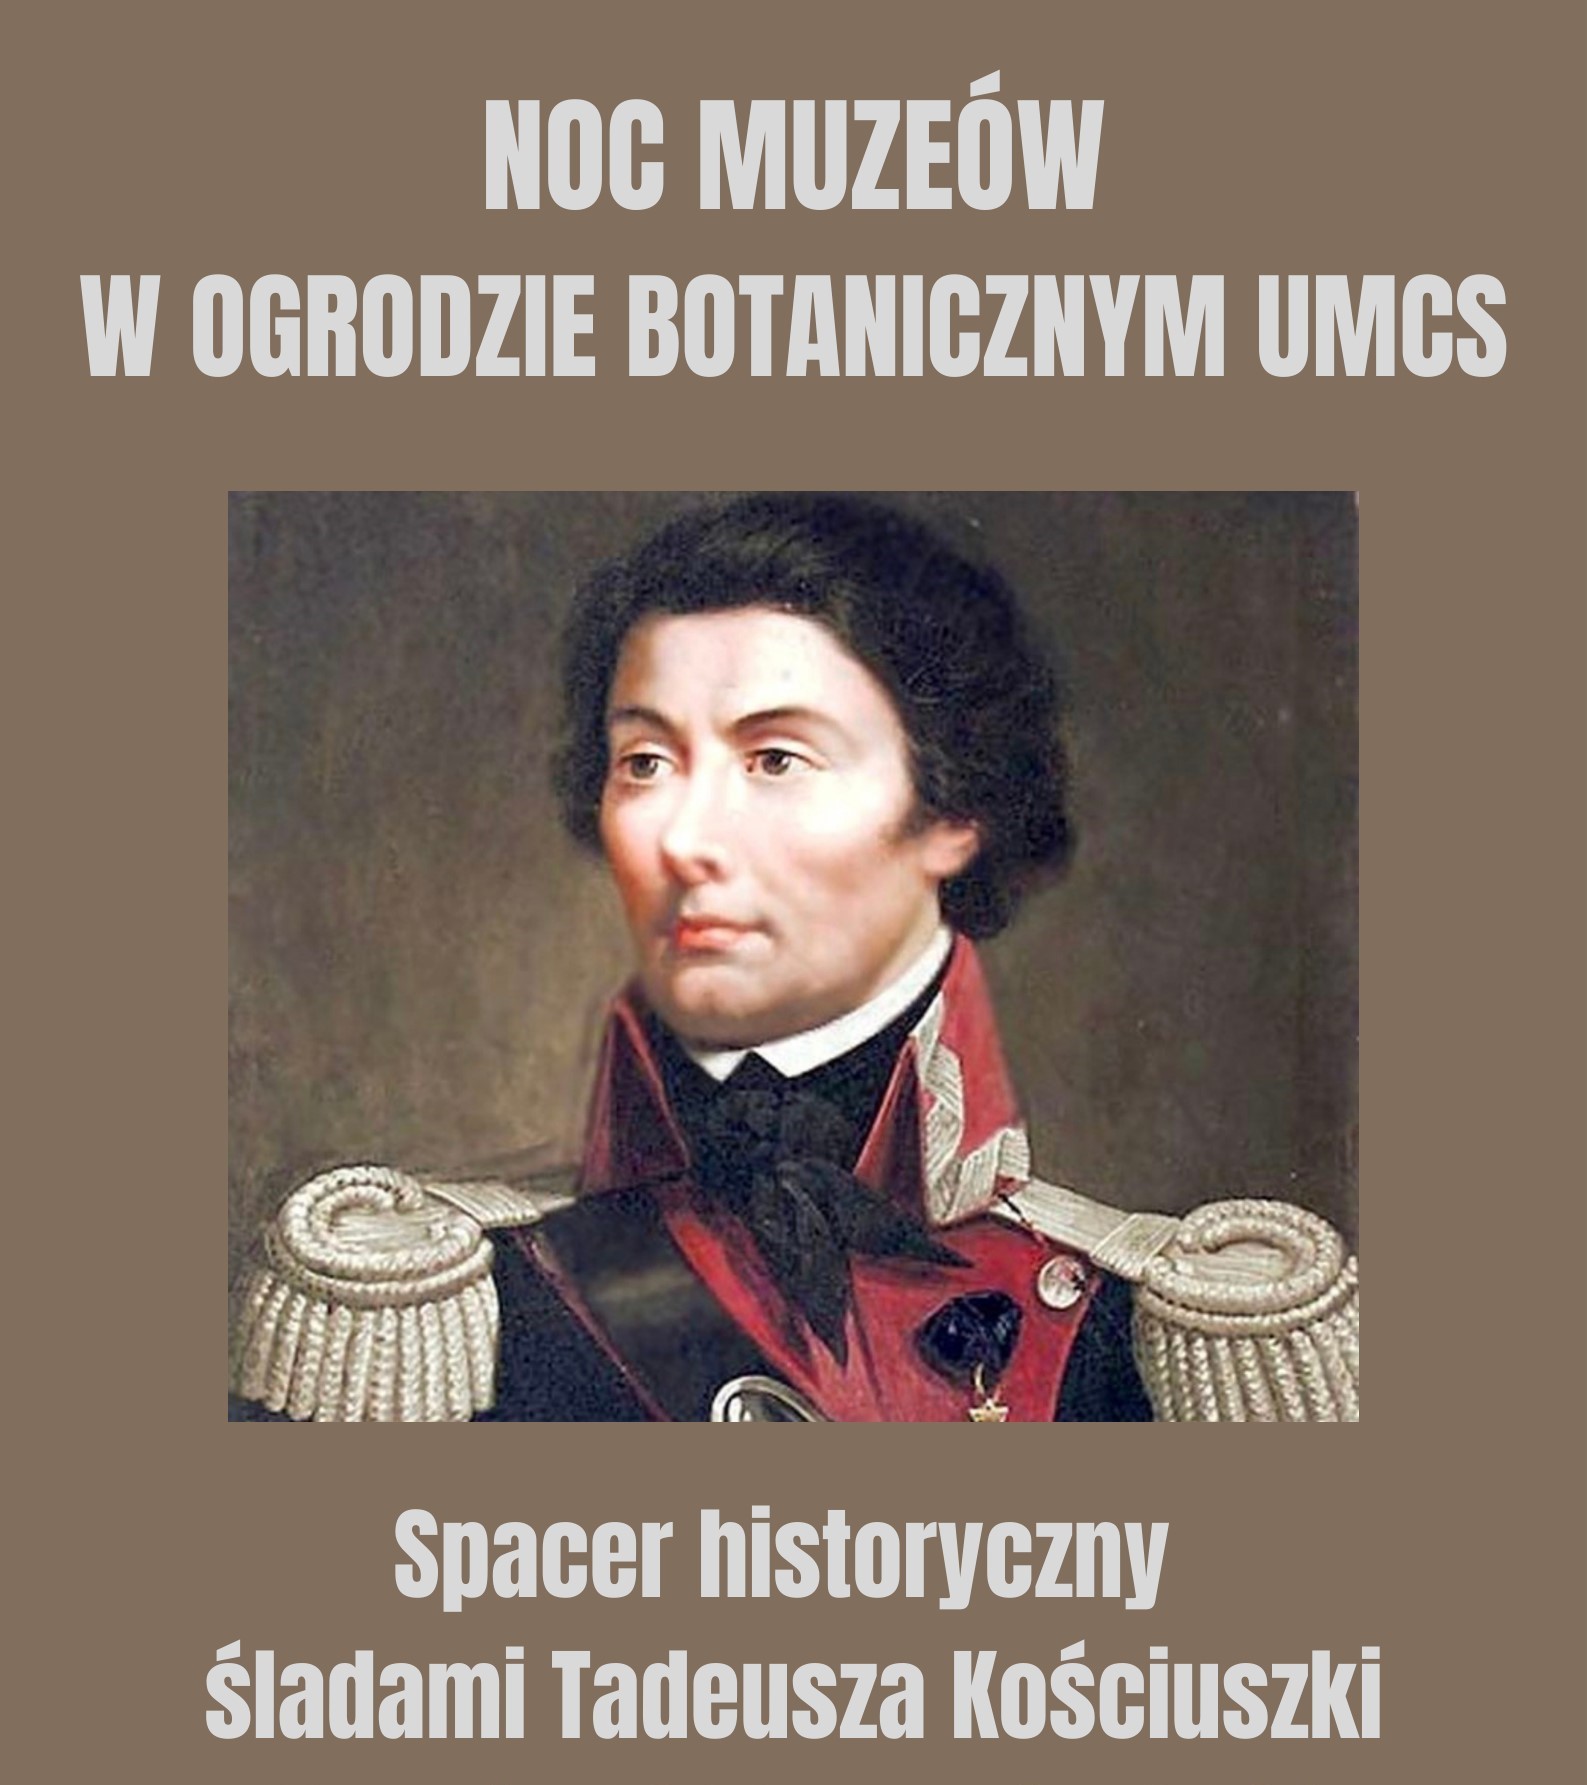 2023 05 18 Noc Muzeow Ogrod Botoniczny